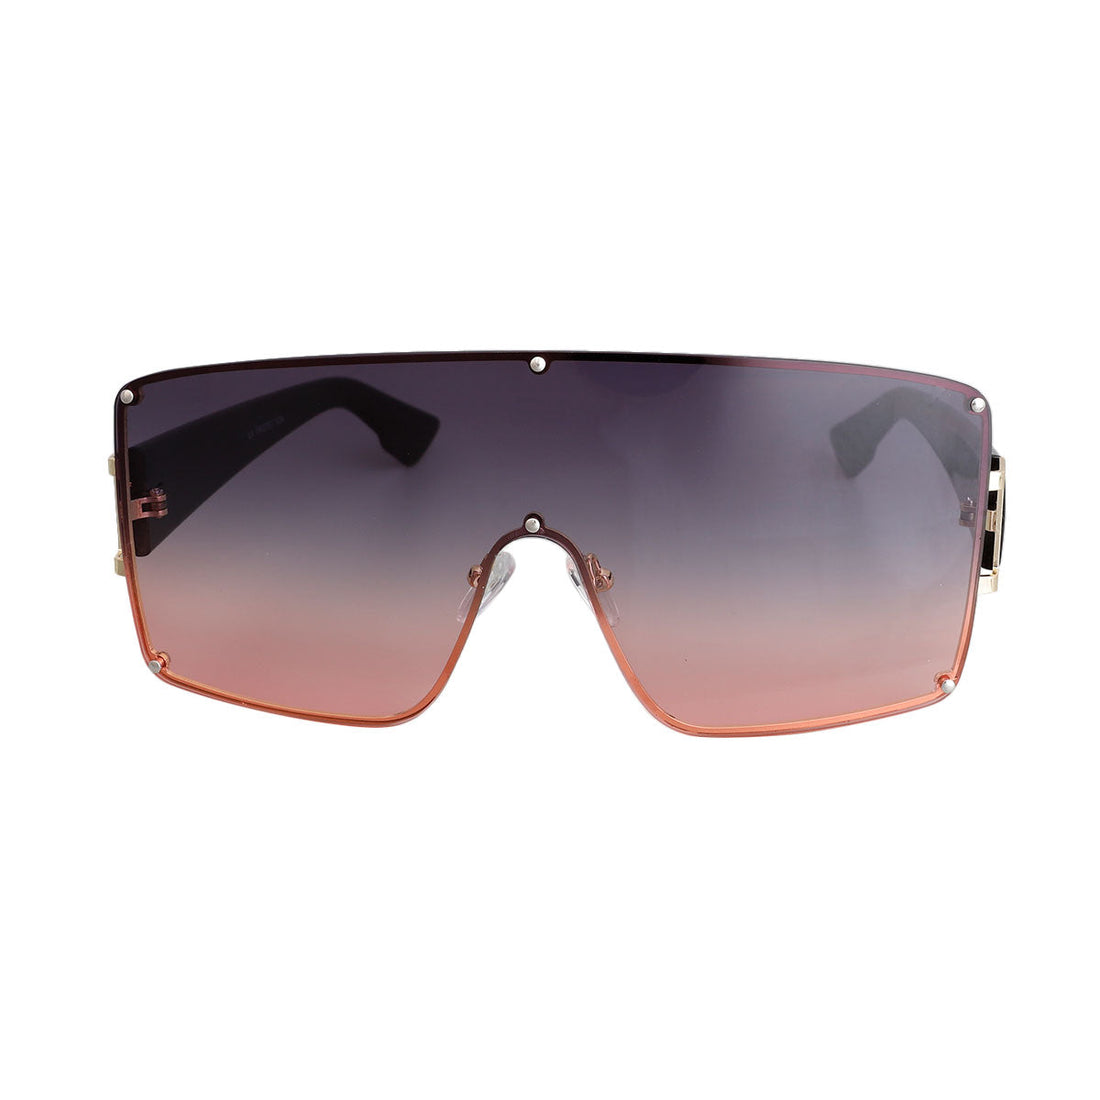 Pink Gradient Square Visor Sunglasses